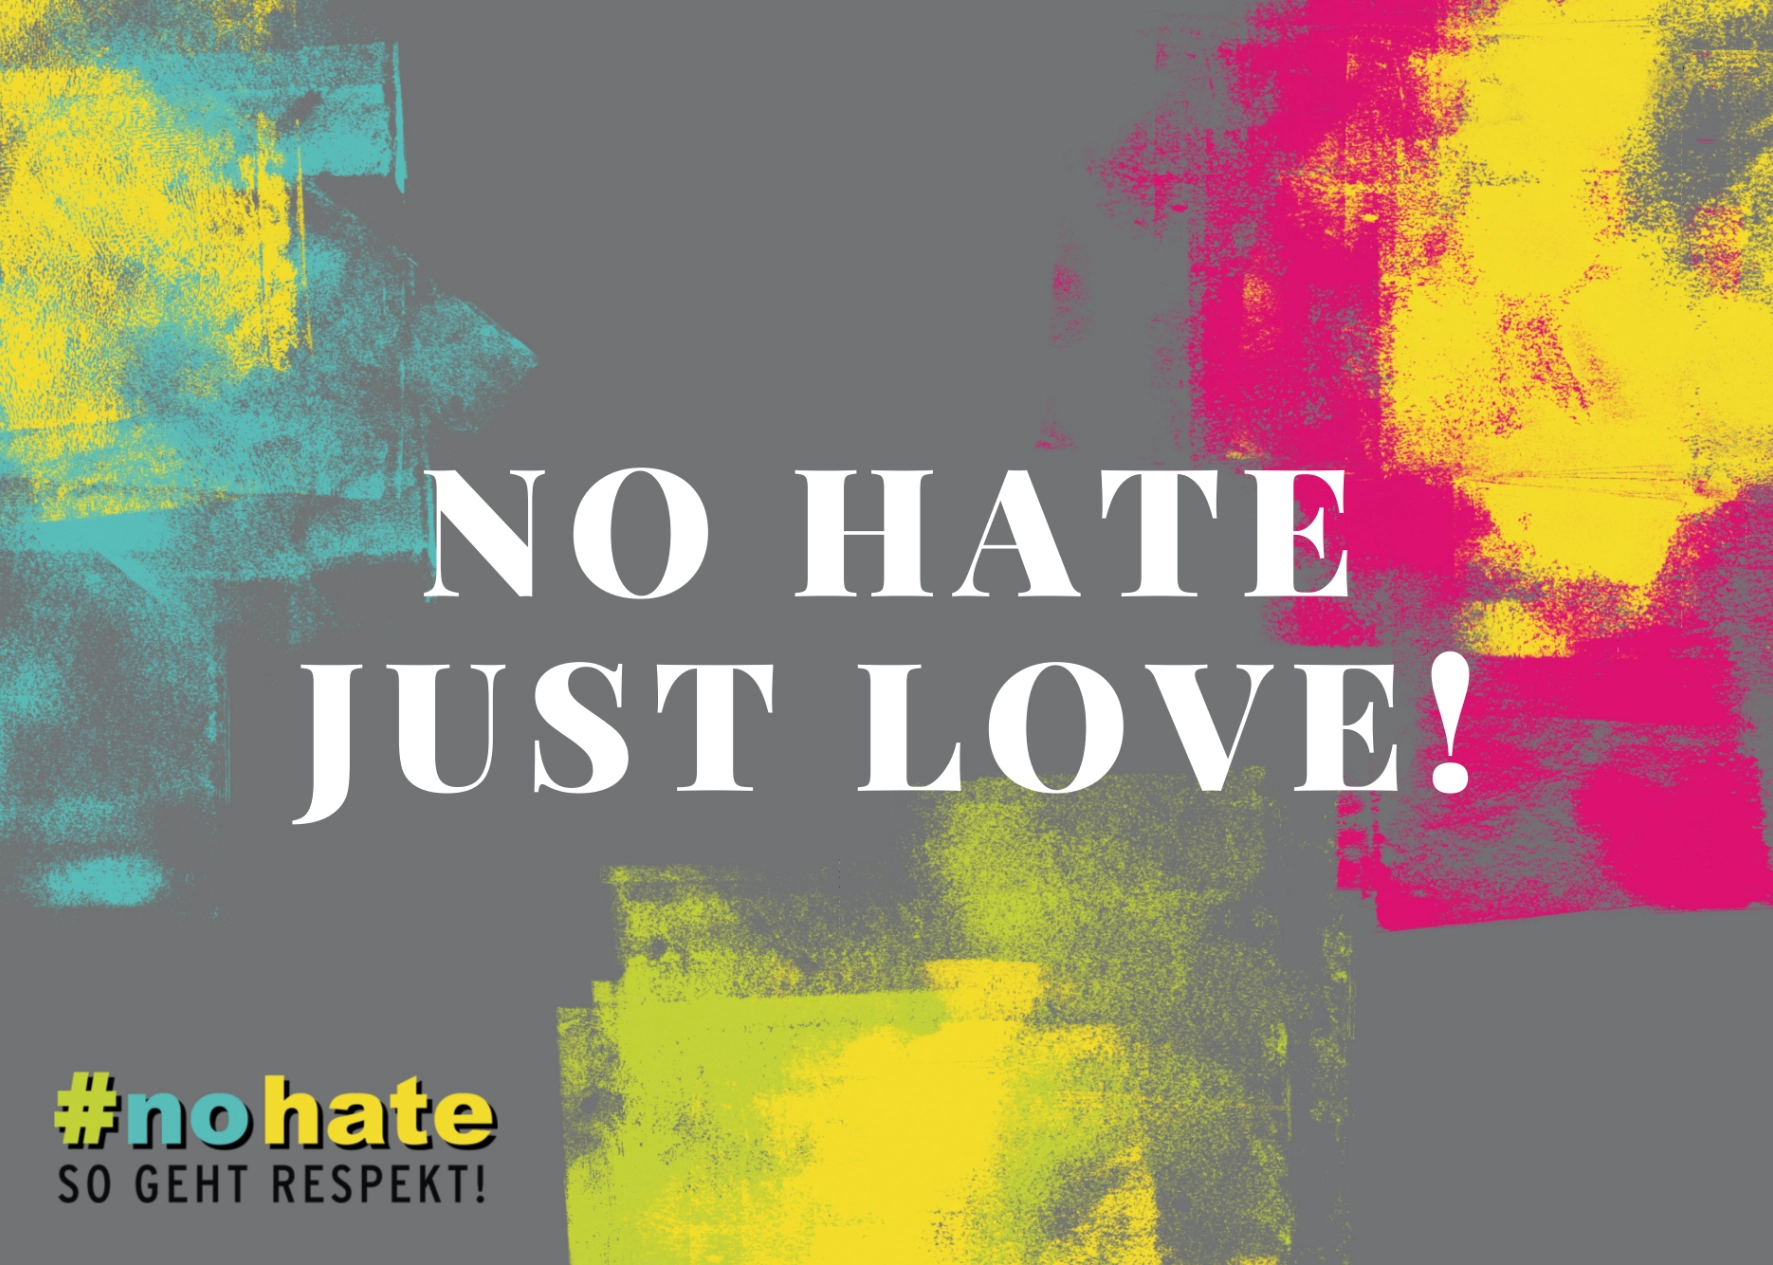 Postkarten- und Stickermotiv "No hate just love!"